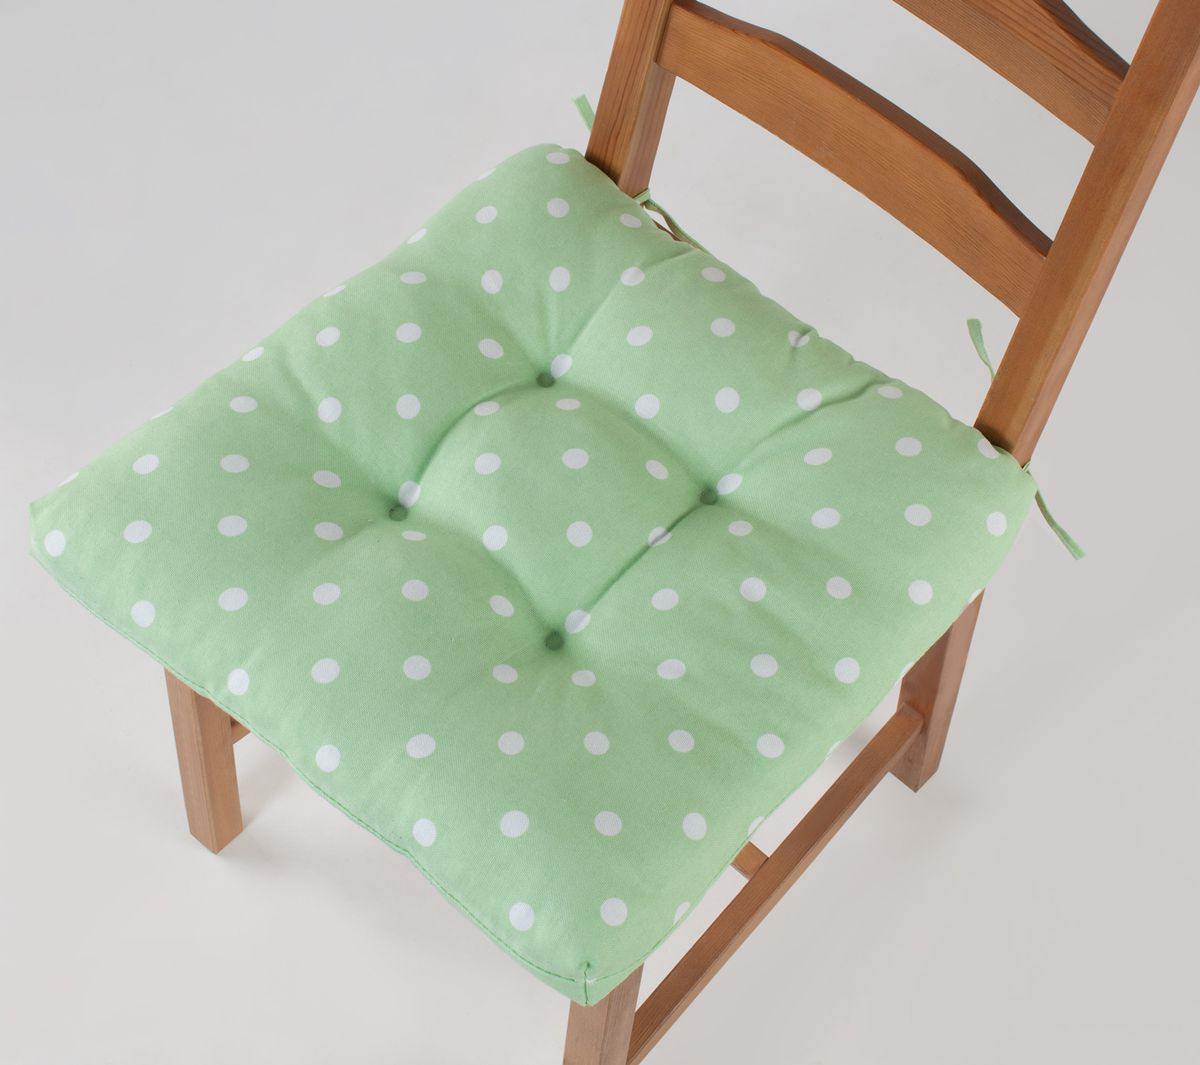 фото Подушка на стул Guten Morgen Горох, СТР-Горз-40-40, светло-зеленый, 40 x 40 см Guten morgen / гутен морген